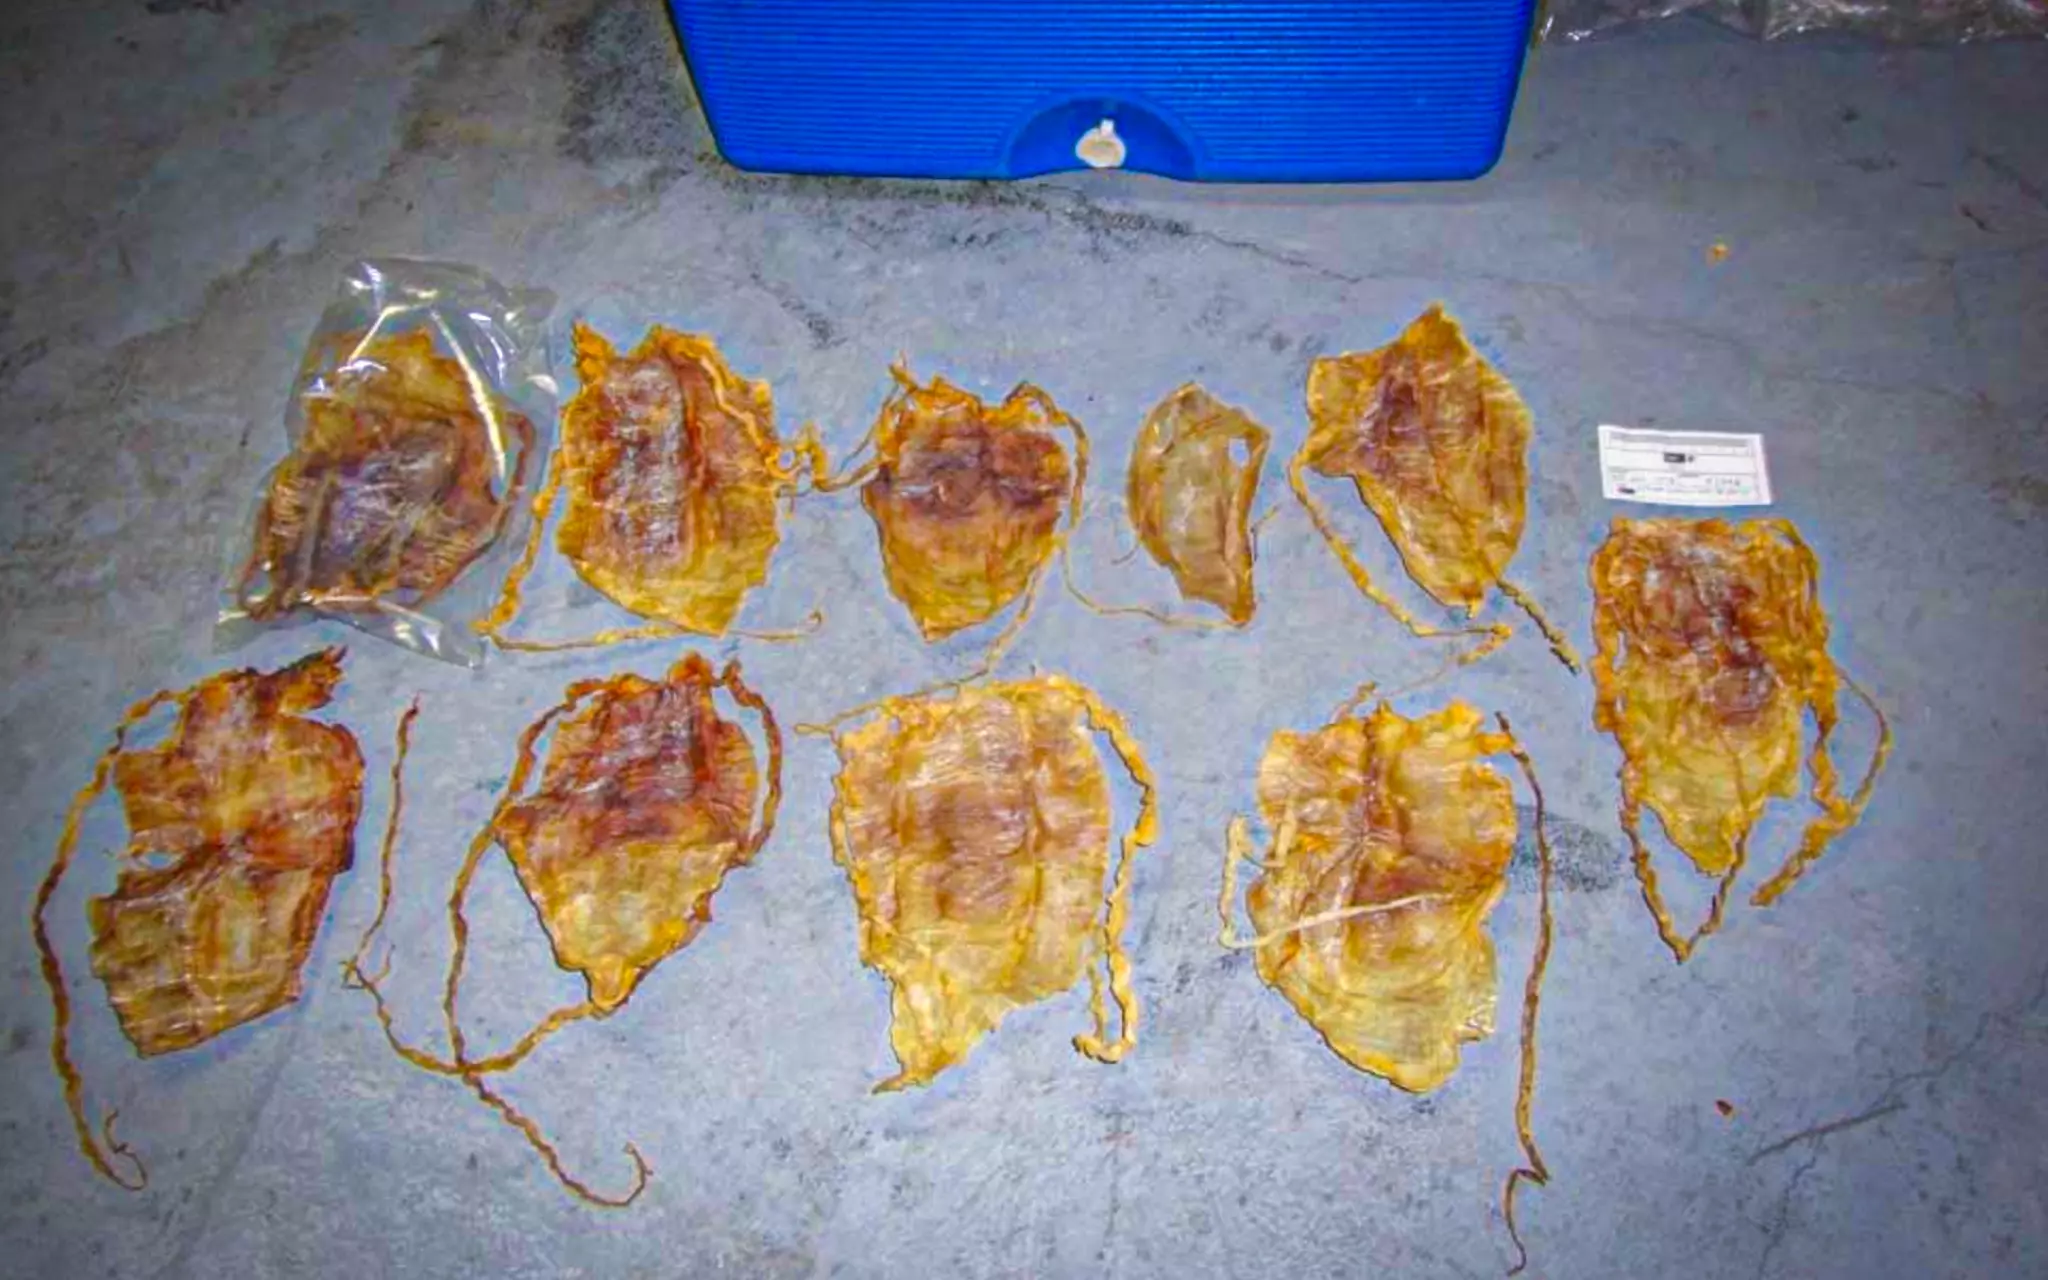 Diez vejigas natatorias del pez totoaba con sus características trenzas, penadas a nivel internacional, estaban escondidas entre las toneladas de curvina y medusa.